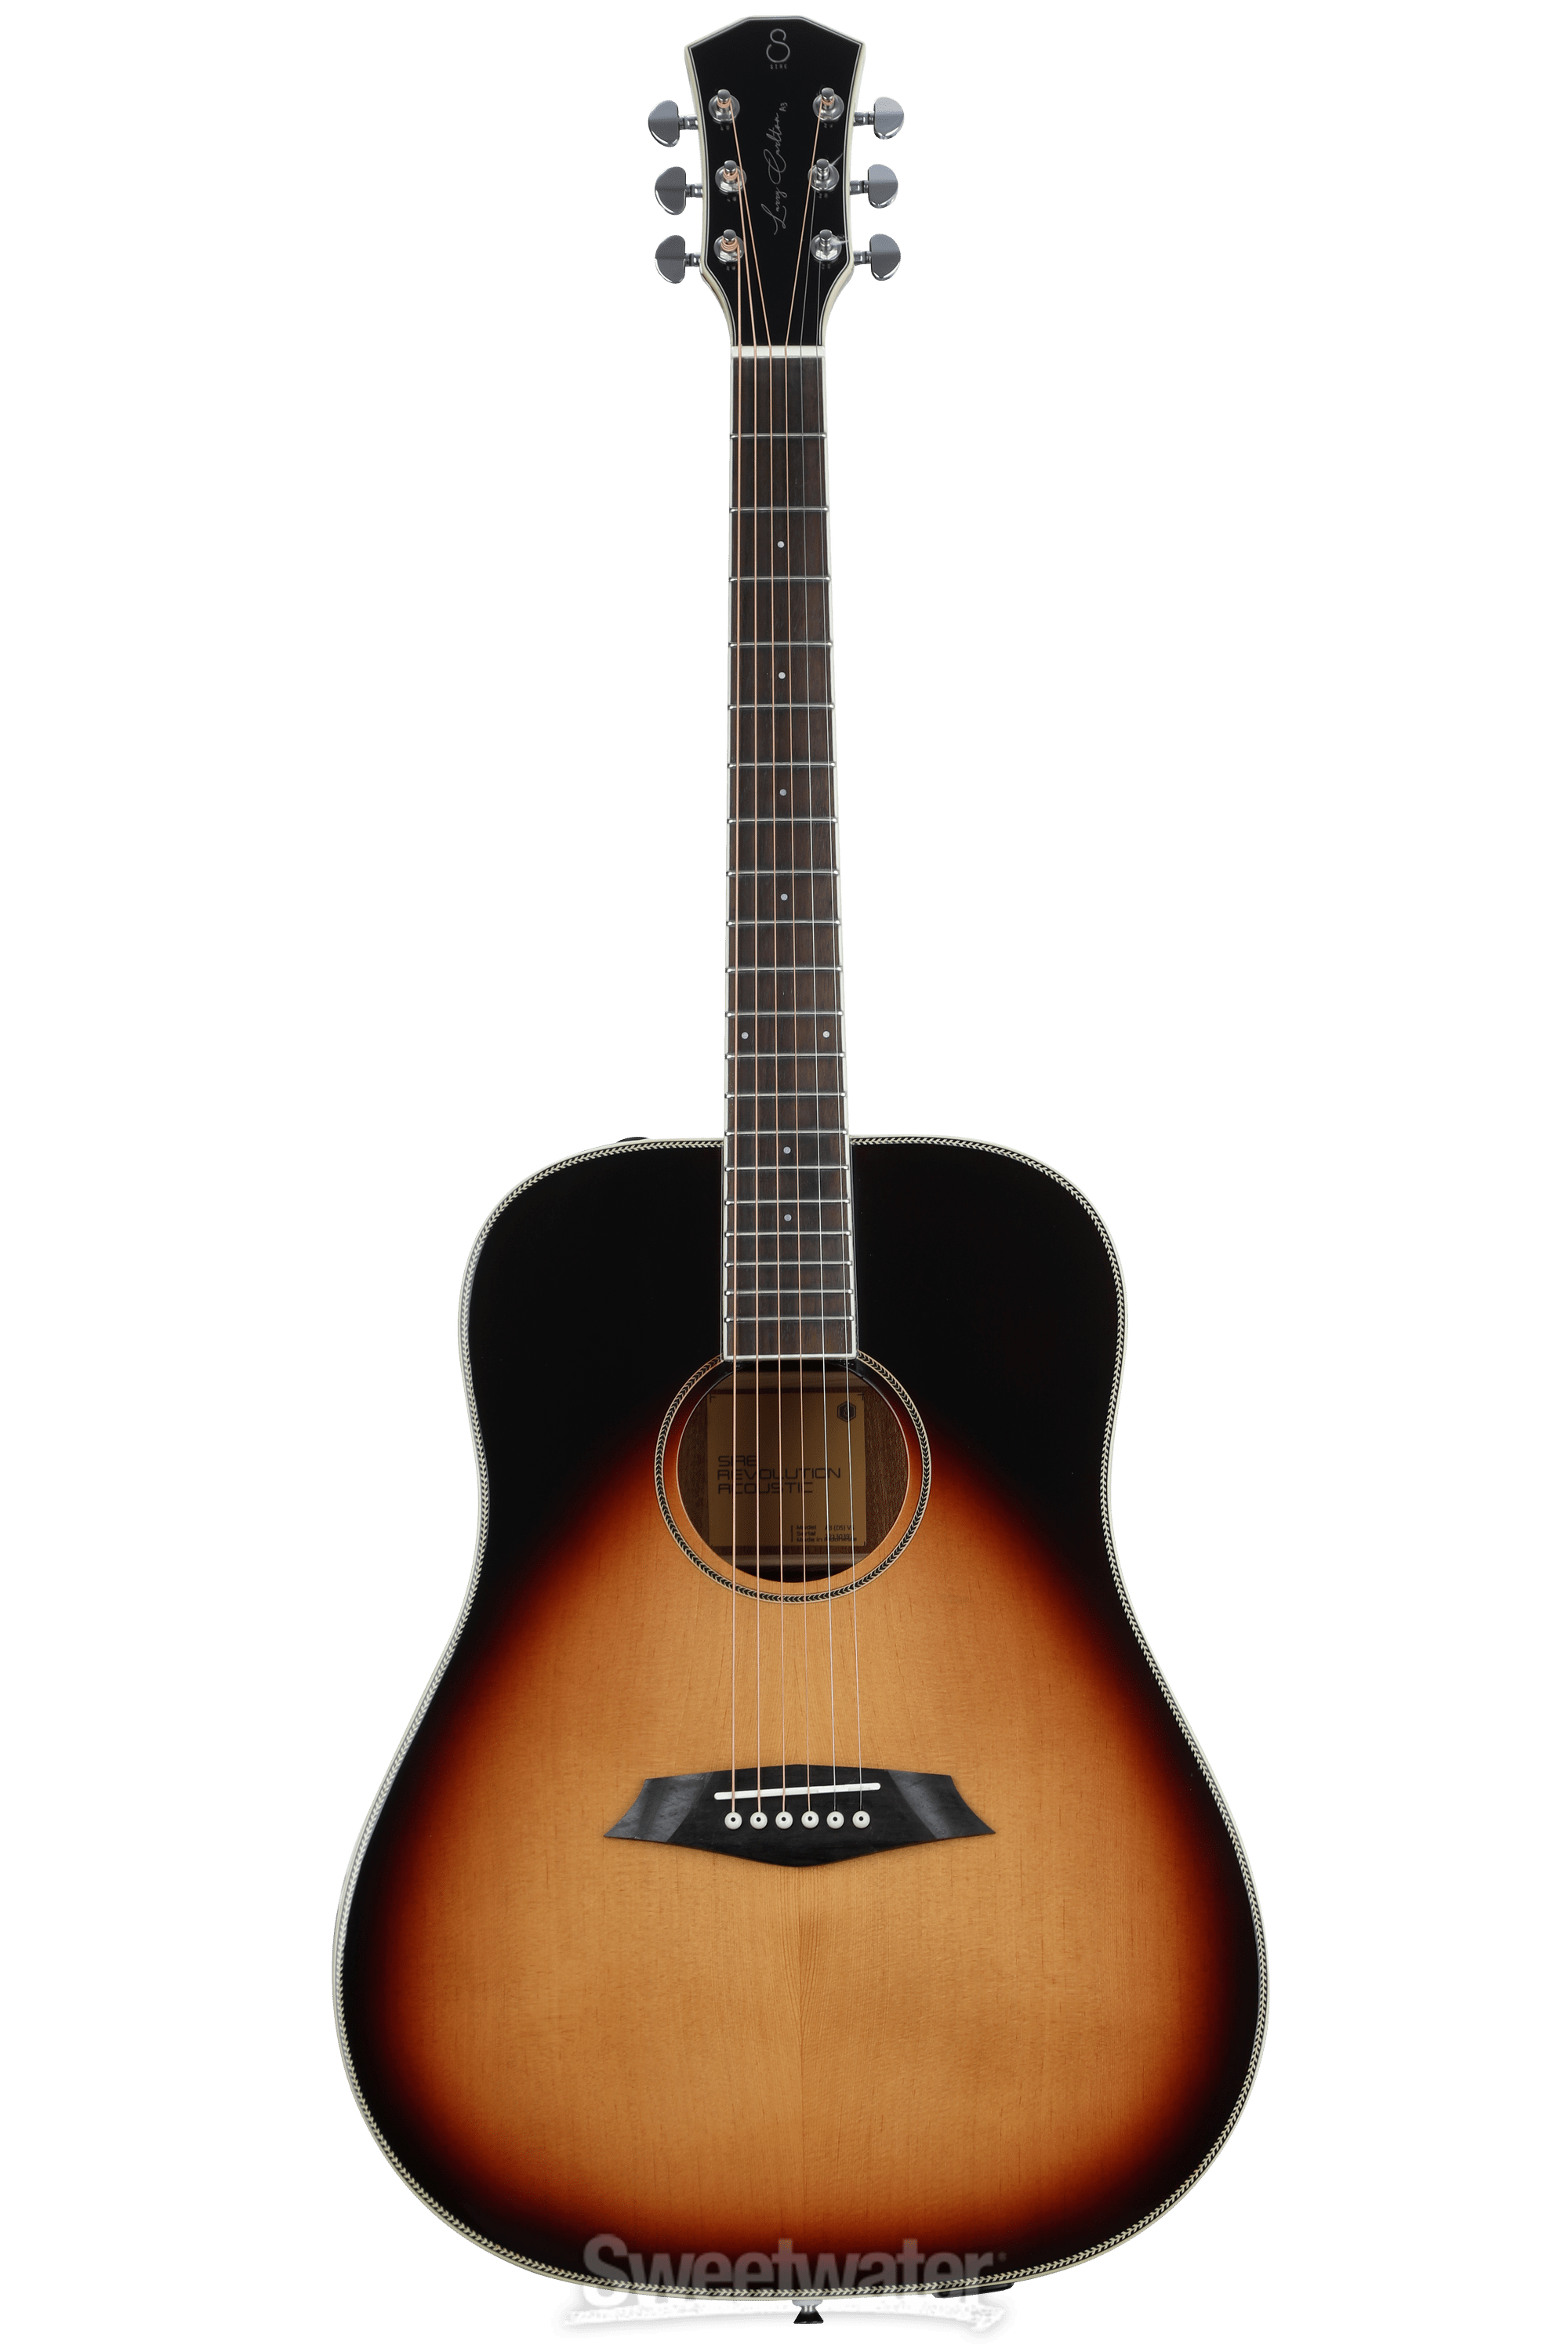 Sire Larry Carlton A3 Dreadnought Acoustic Guitar - Vintage Sunburst